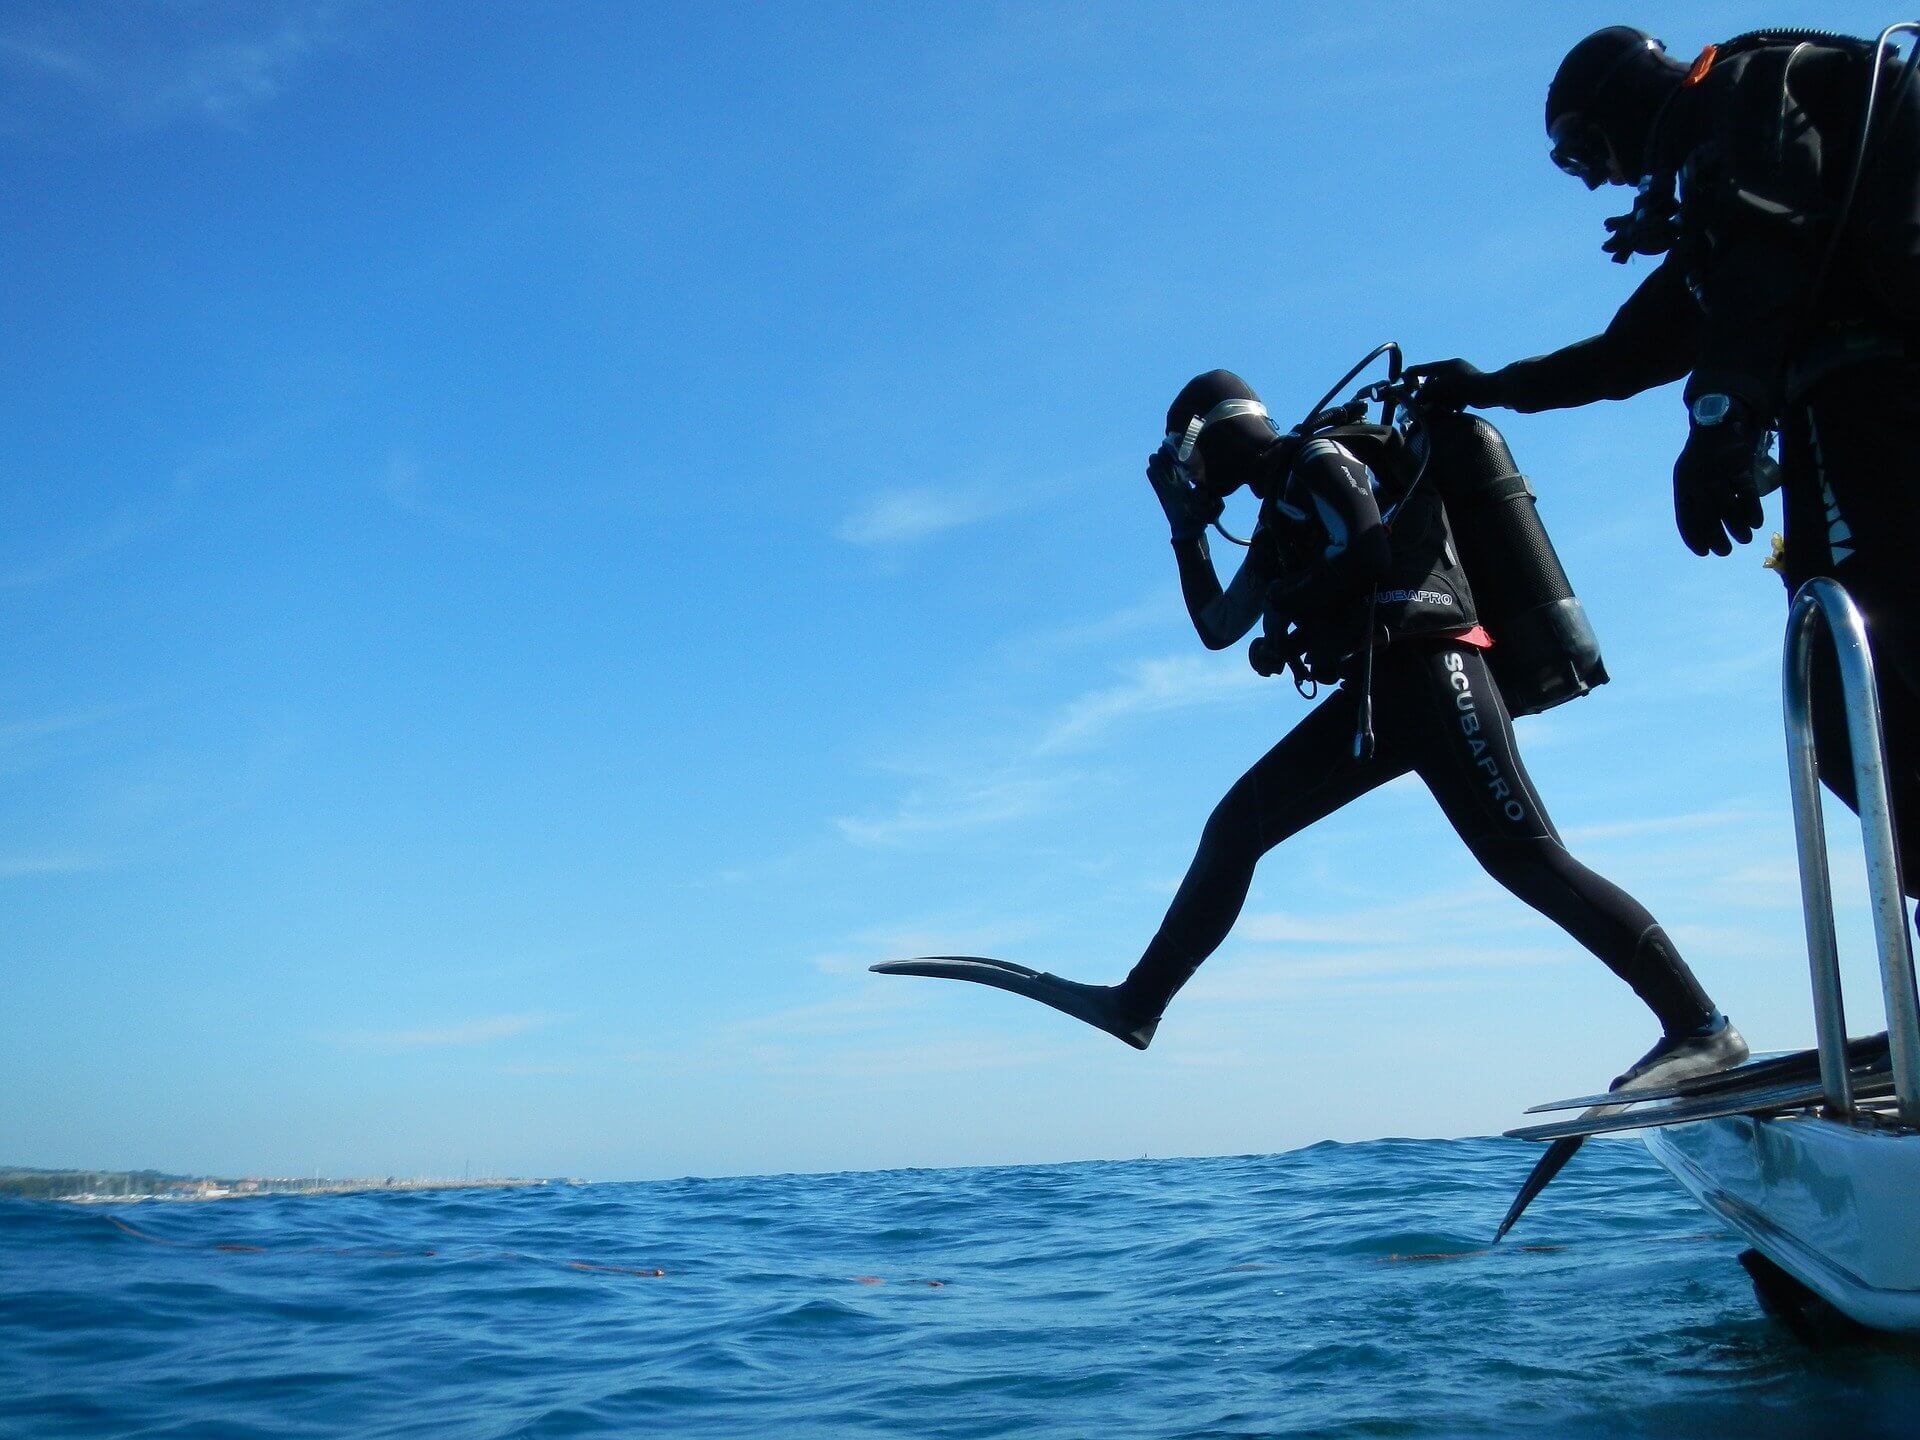 Nusa lembongan snorkelling